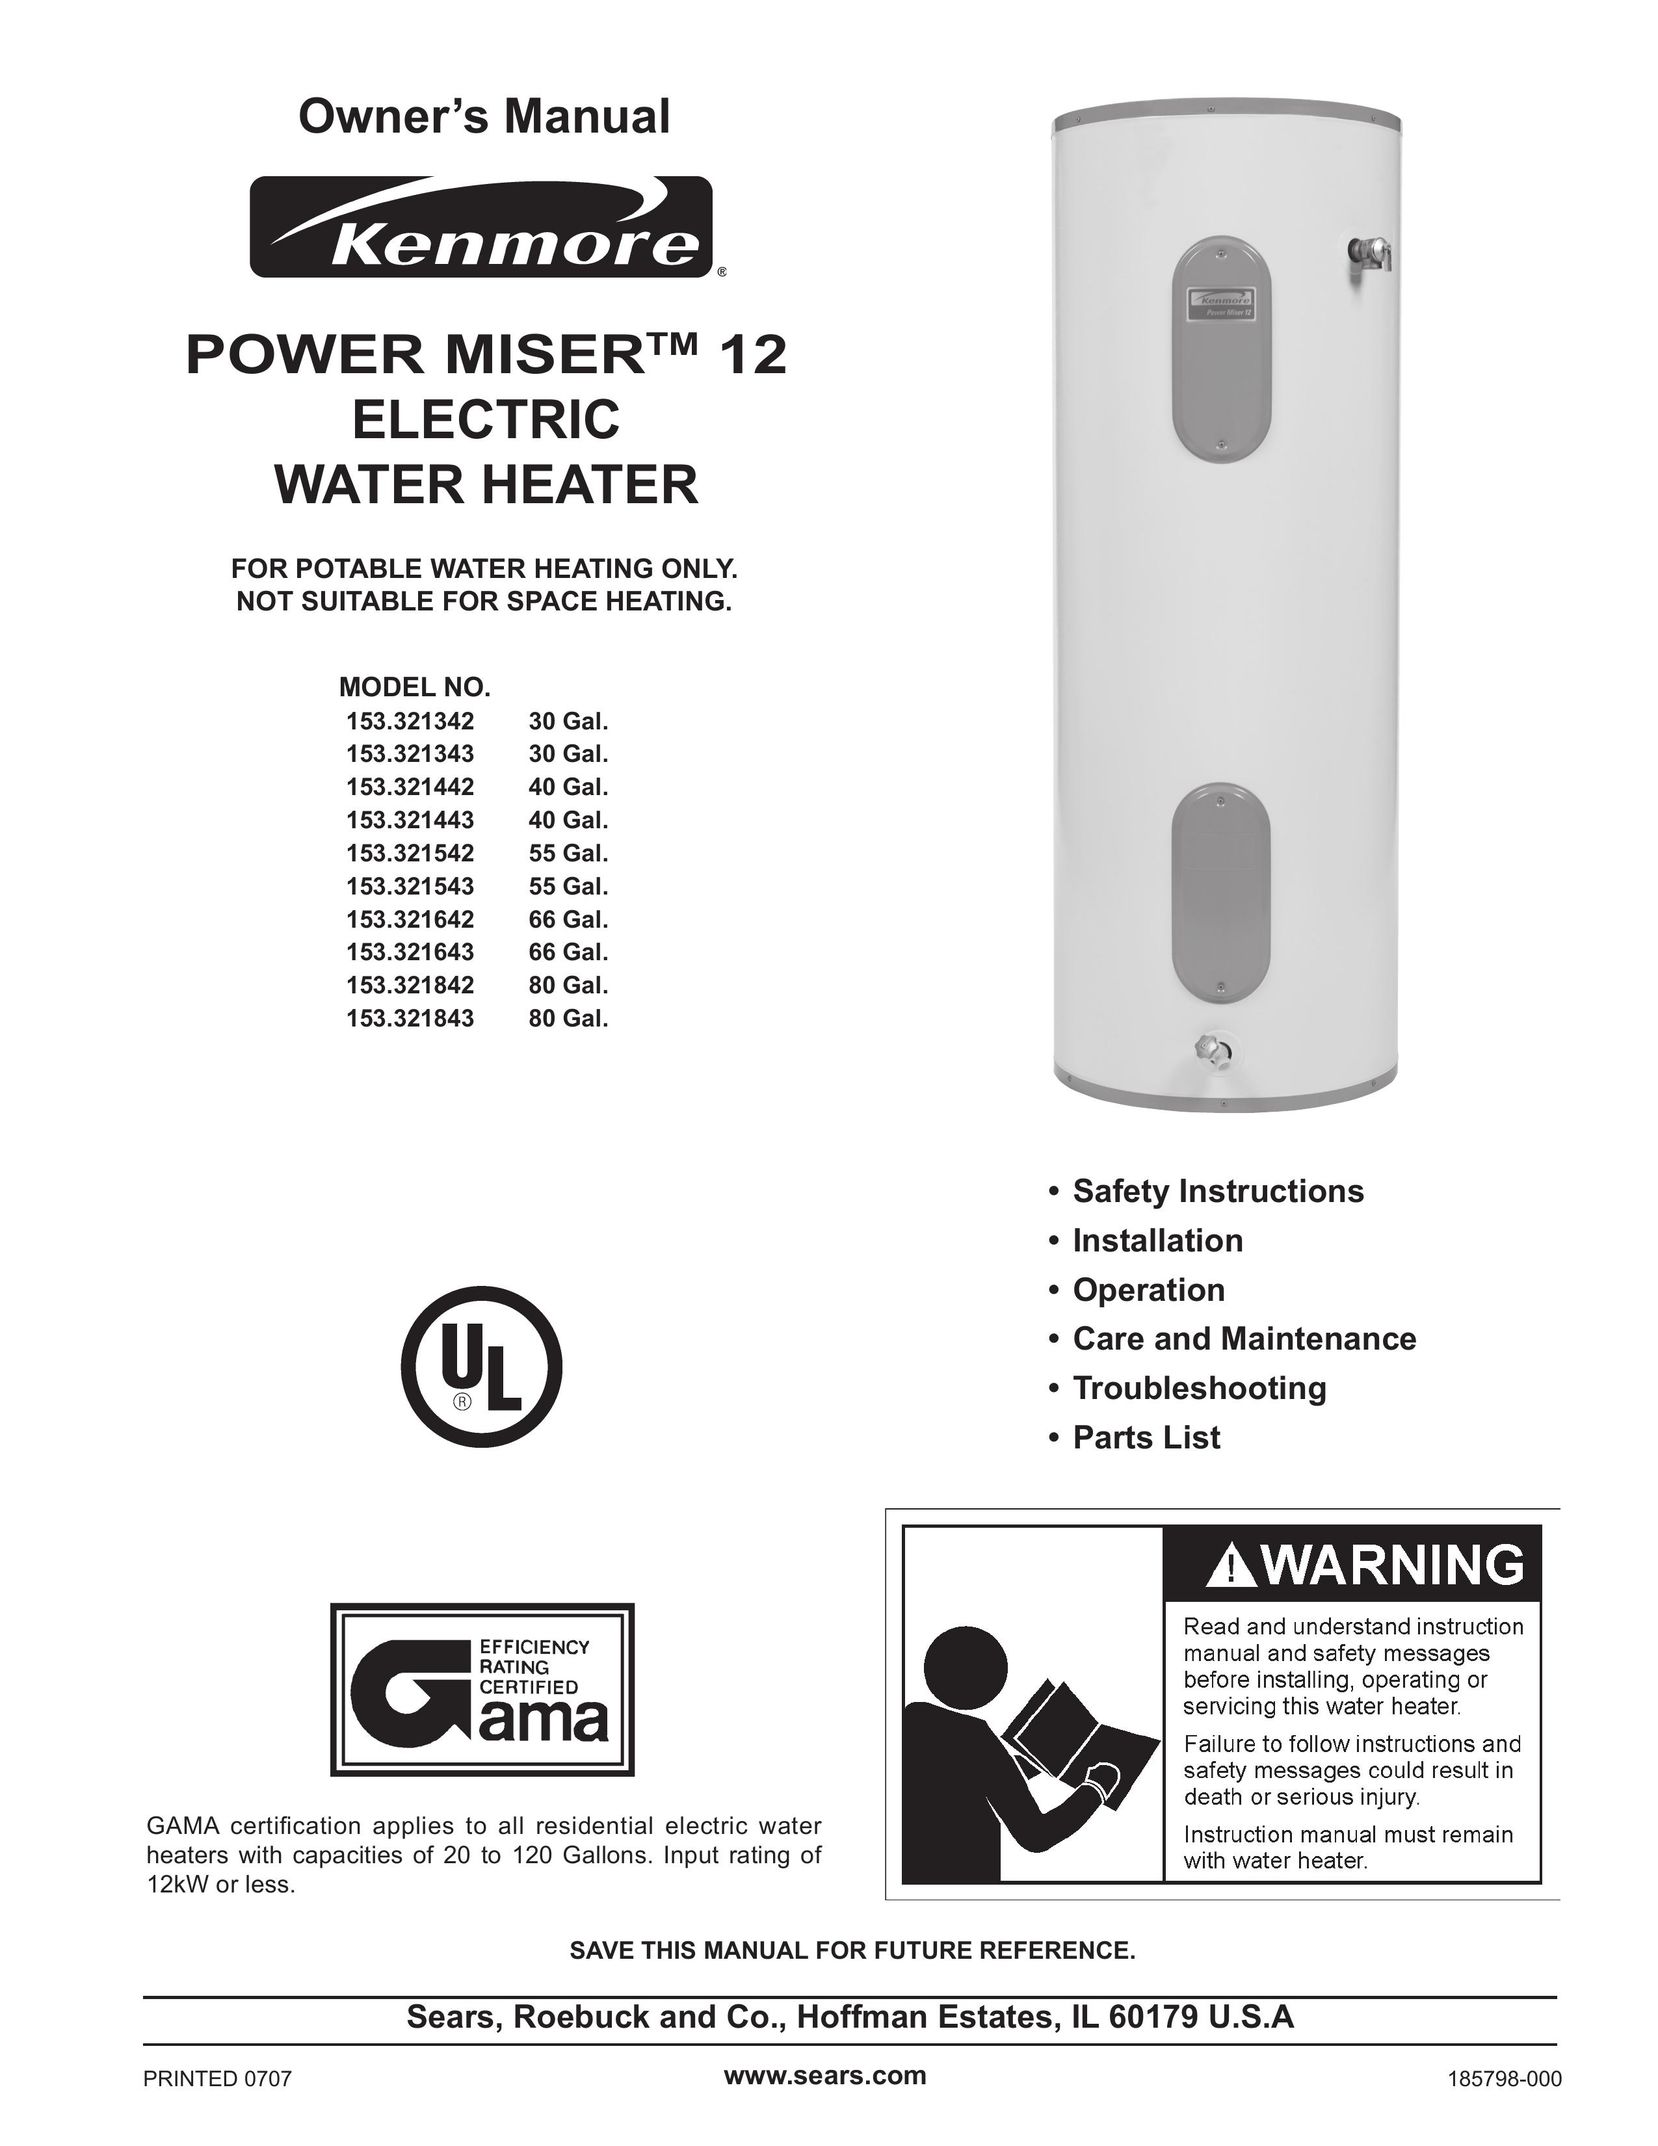 Sears 153.321643 Water Heater User Manual